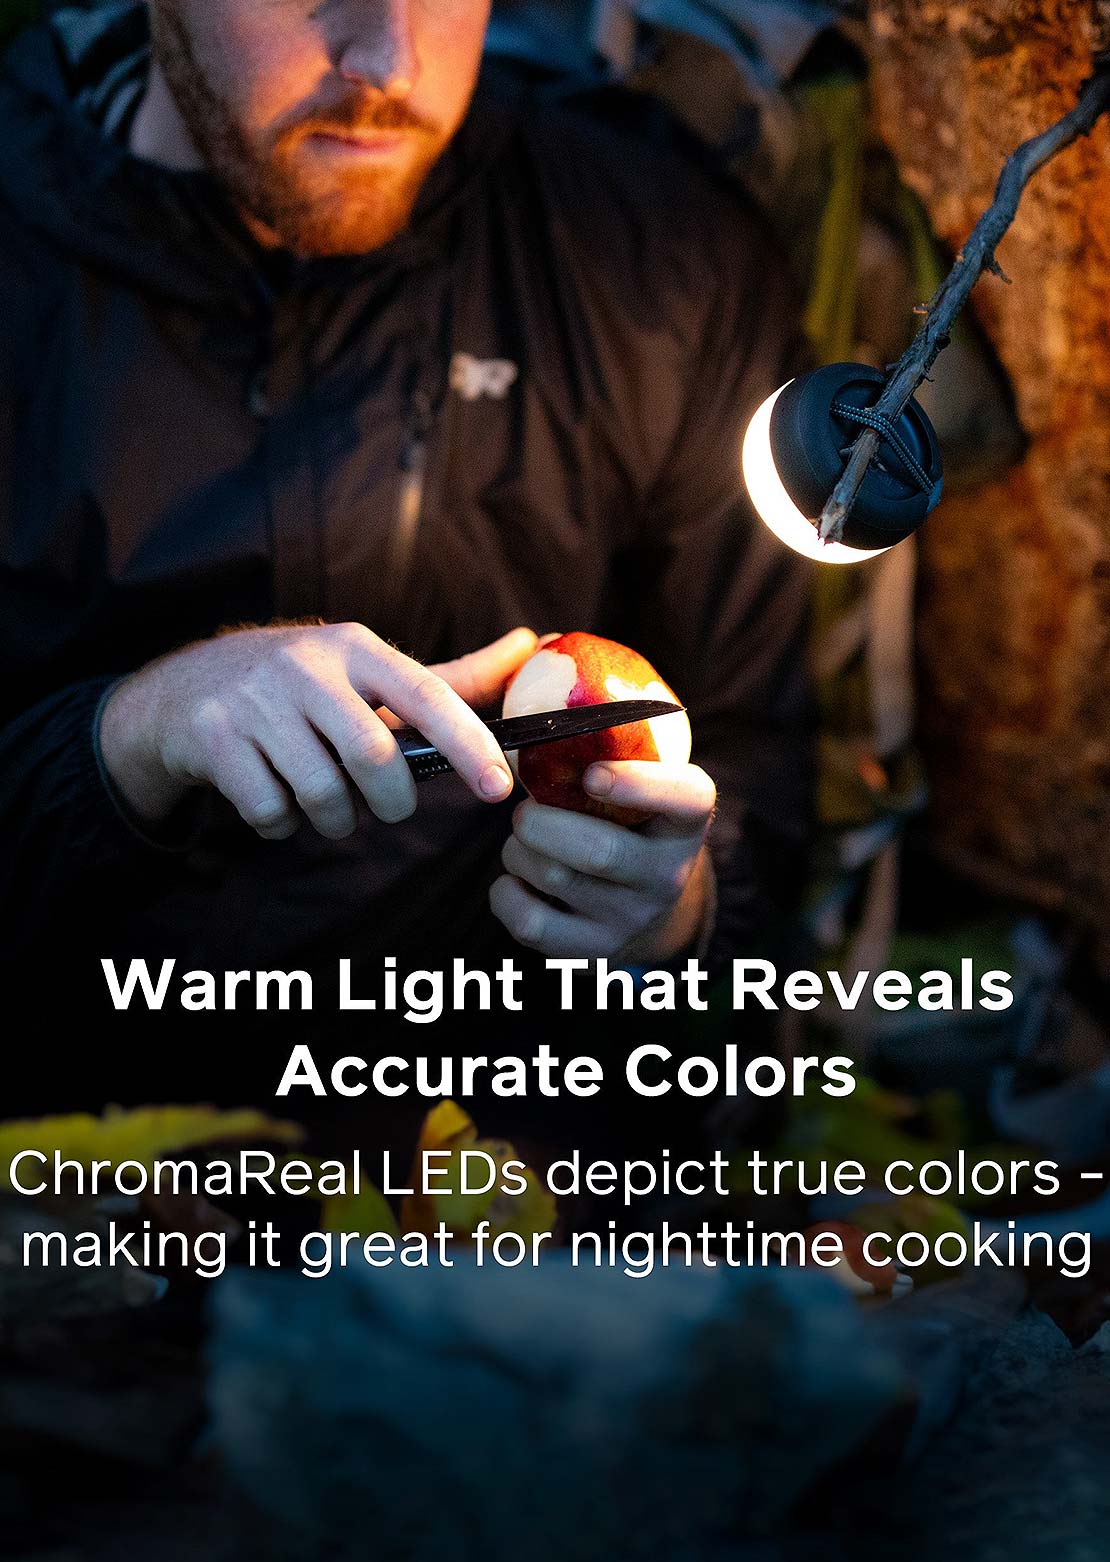 BioLite AlpenGlow Mini Lantern Charcoal